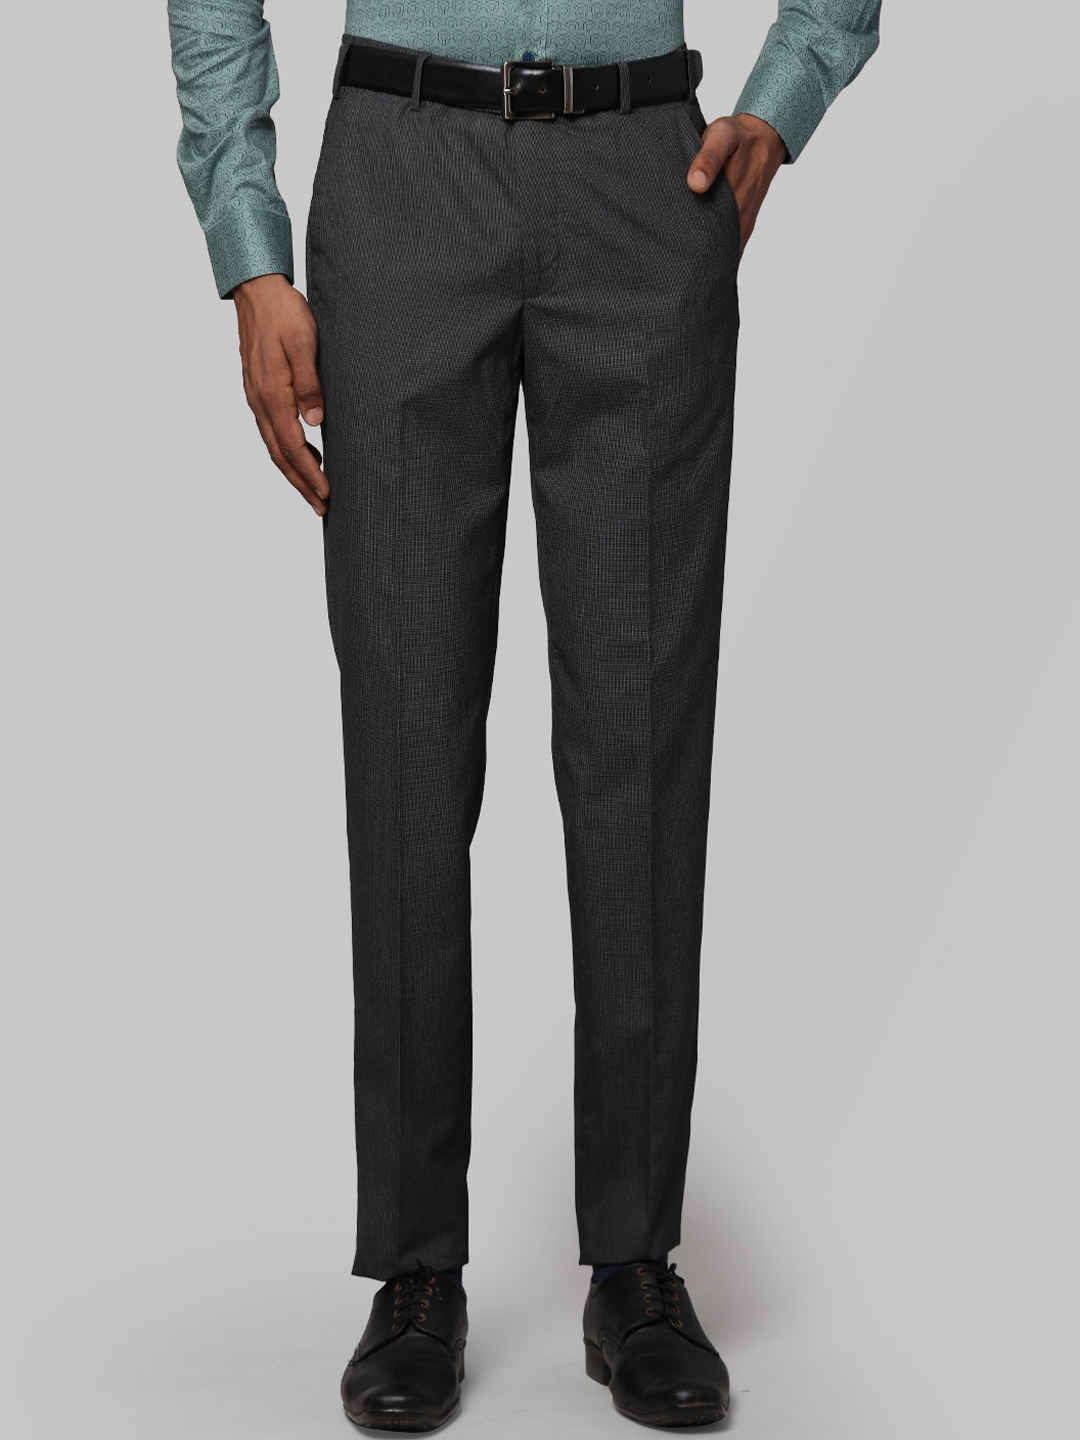 Buy Next Look Men Grey Slim Fit Formal Trousers - Trousers for Men ...